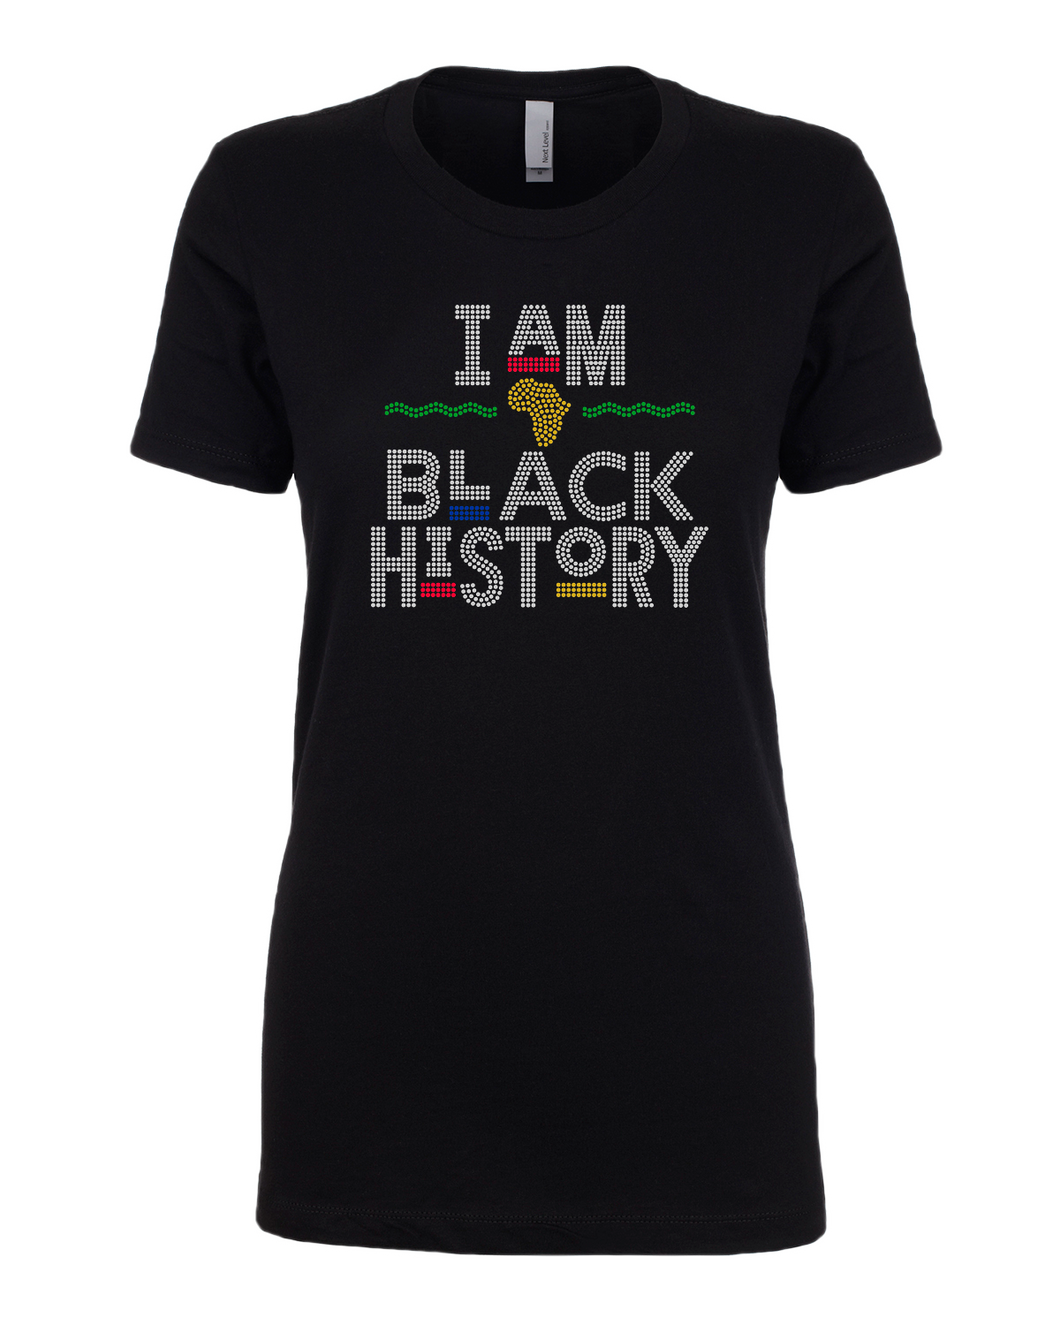 I am Black History - Colors